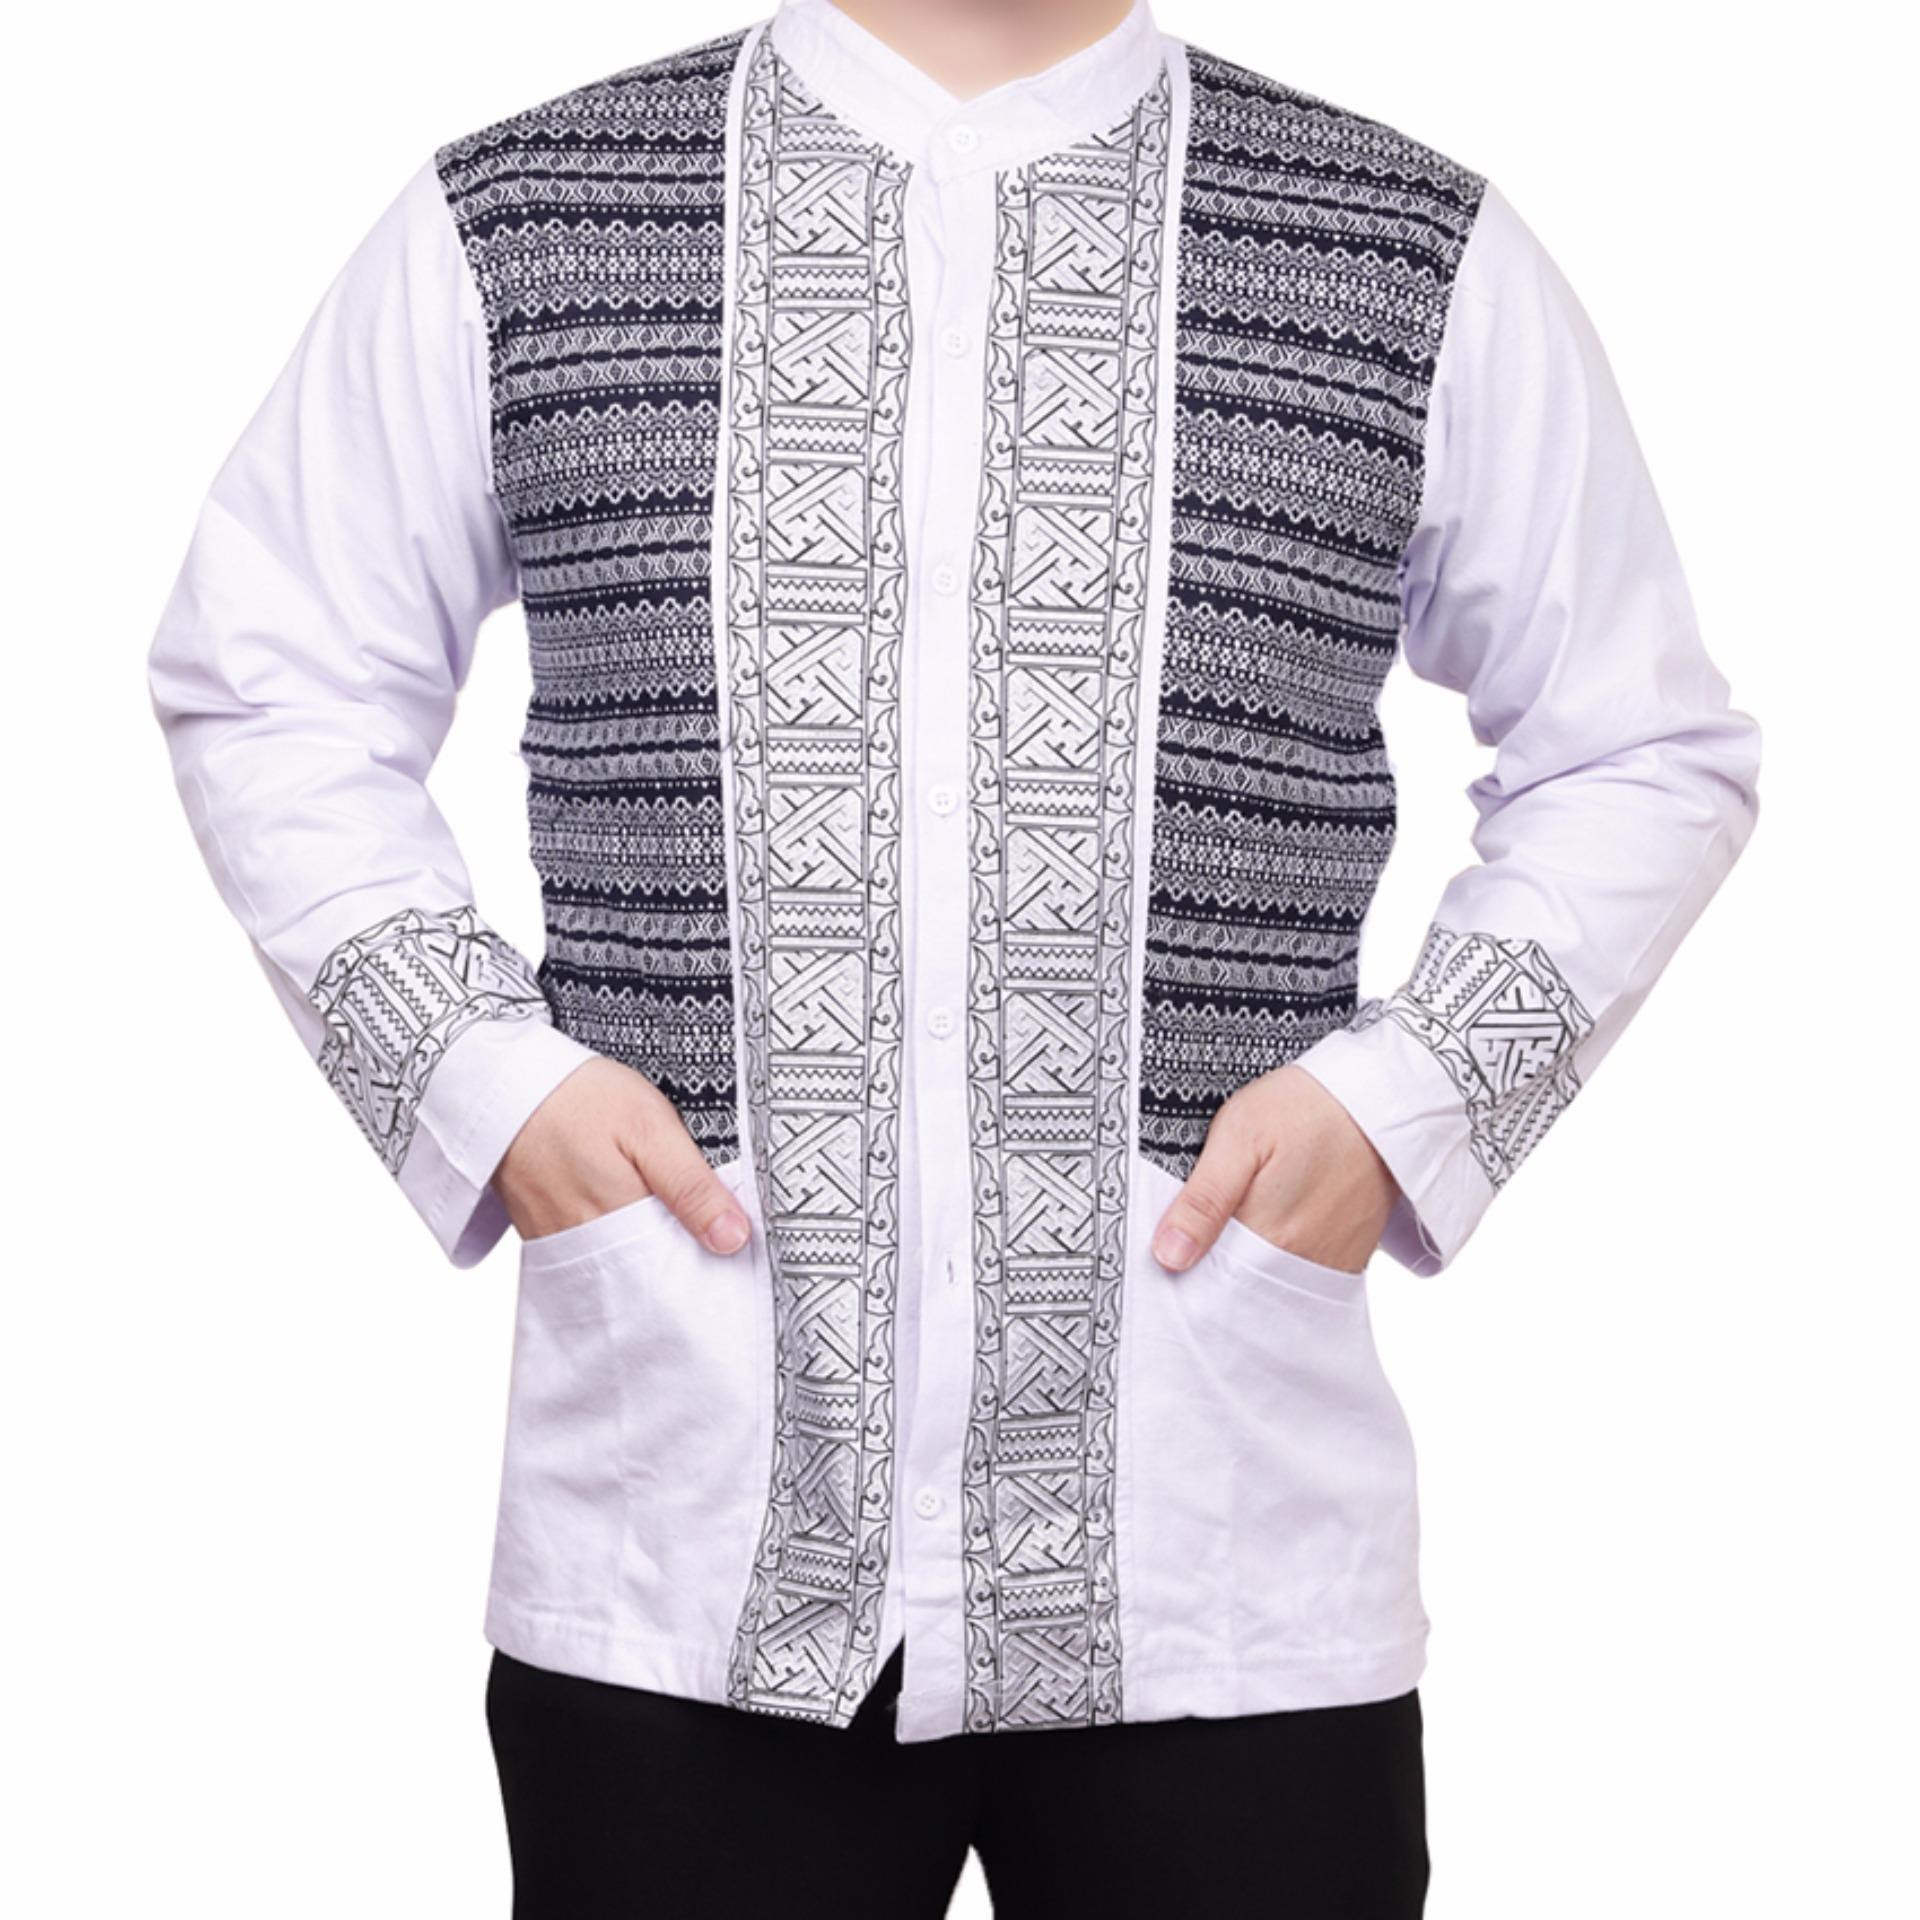 BELI SEKARANG Ormano Baju  Koko Muslim  Batik Lengan Panjang  